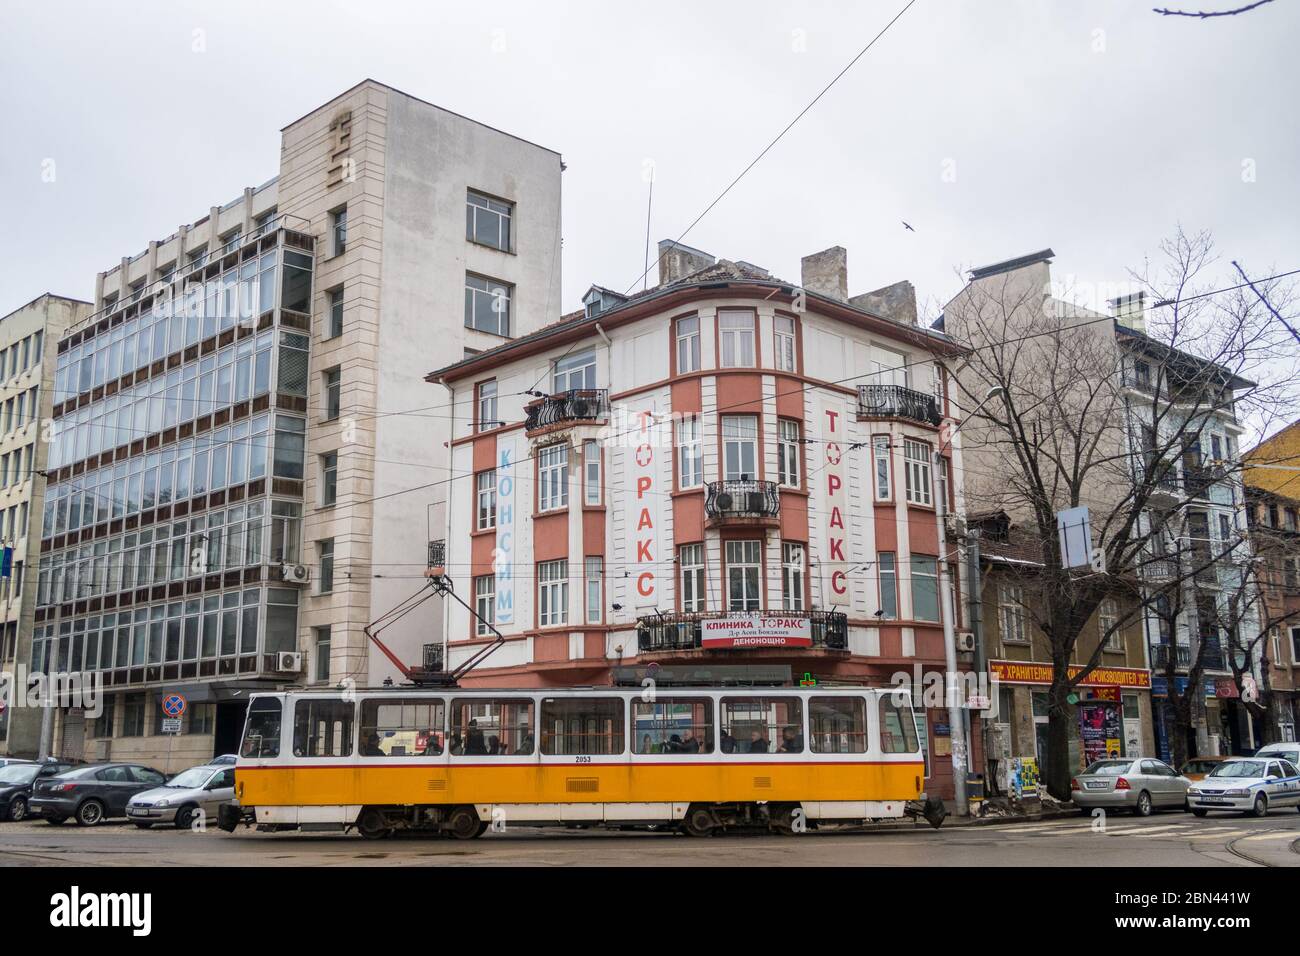 SOFIA, BULGARIA - 26 MARZO 2018: Edifici e tram a Sofia durante il giorno. La gente può essere vista. Foto Stock